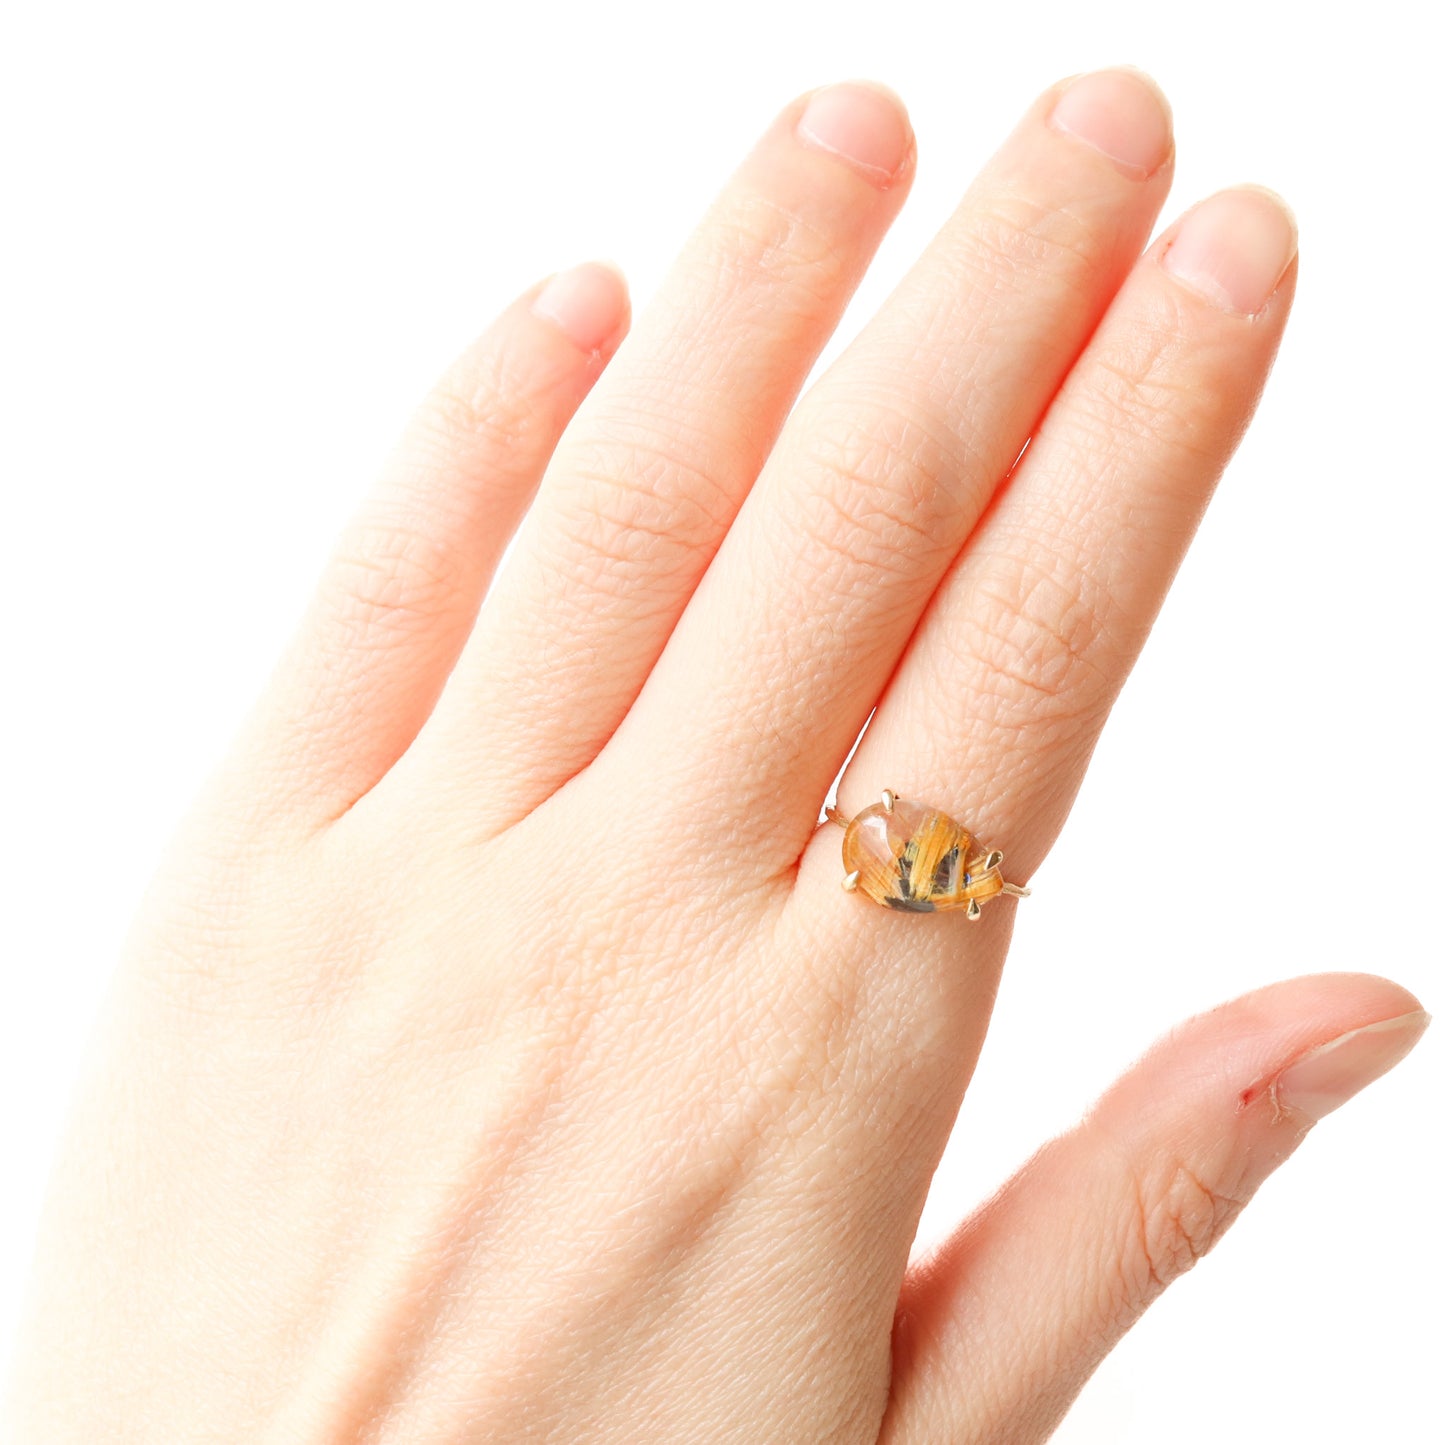 爪形戒指 - 花金红石石英 -